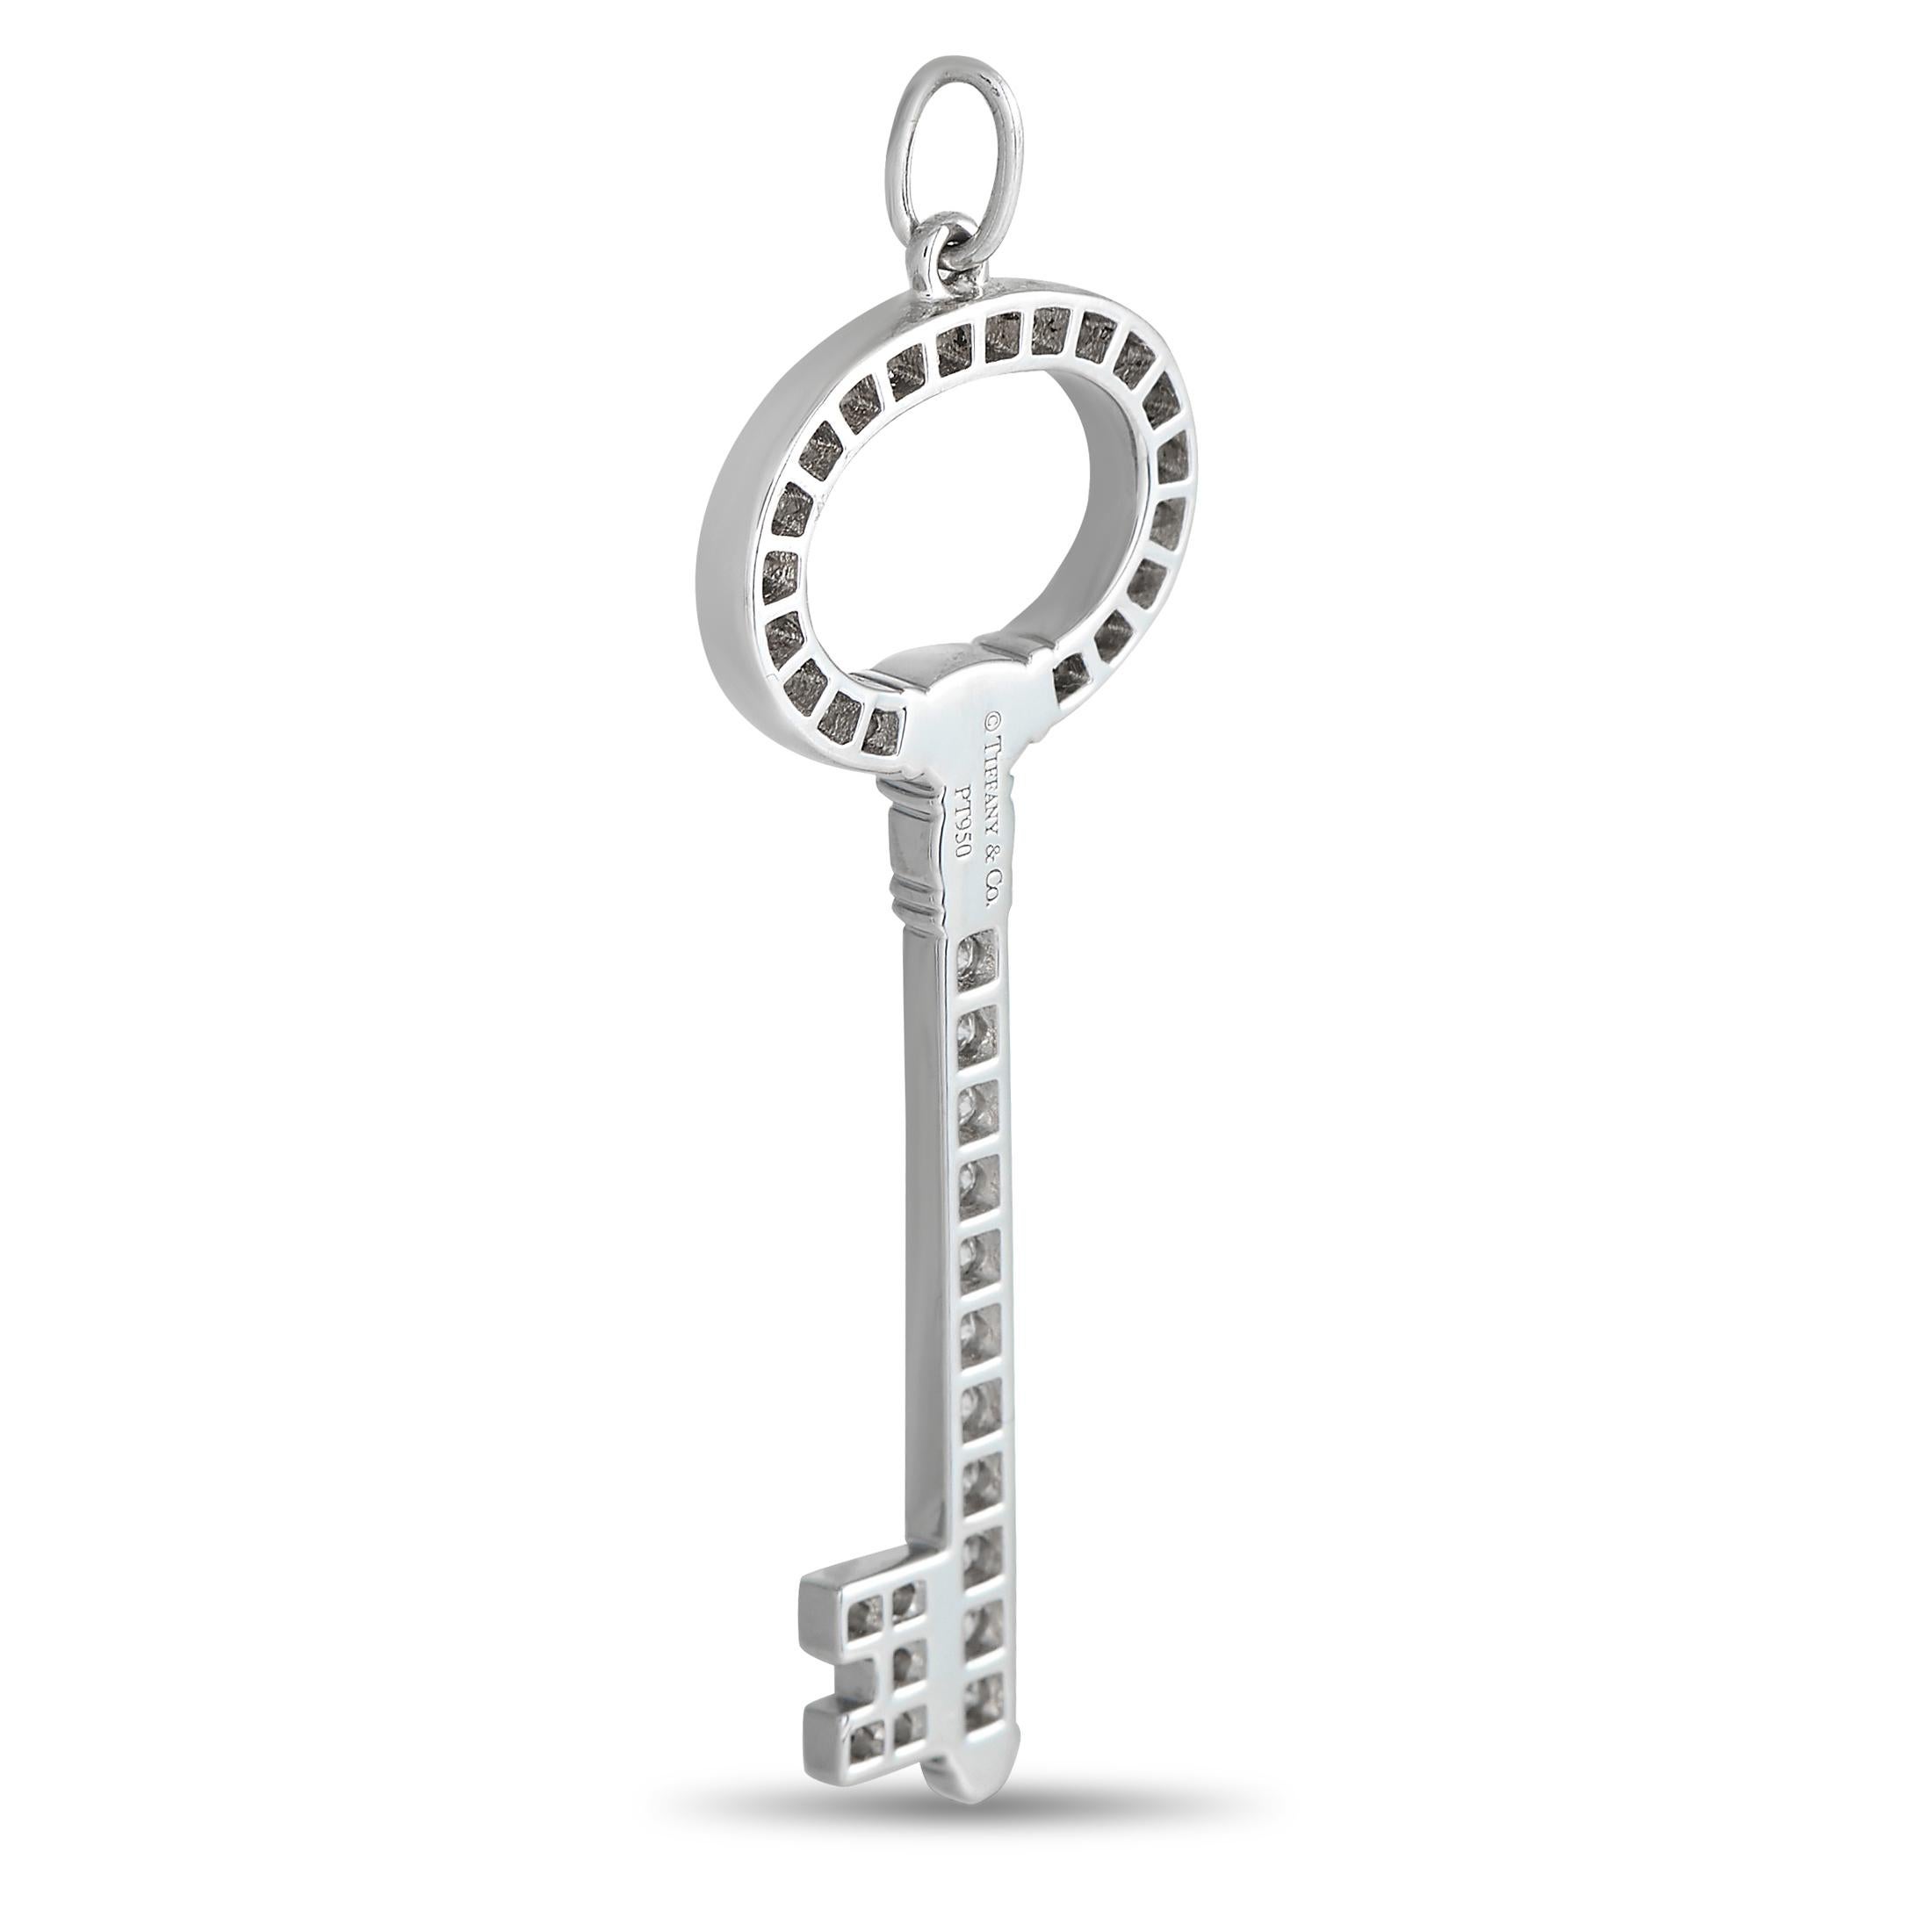 Ein moderner und doch zeitloser Tiffany-Schlüssel aus beständigem Platin. Dieses Schmuckstück wurde erstmals 2009 vorgestellt und steht für die Vision der Marke von den unendlichen Möglichkeiten. Dieser Platinanhänger hat die Form eines